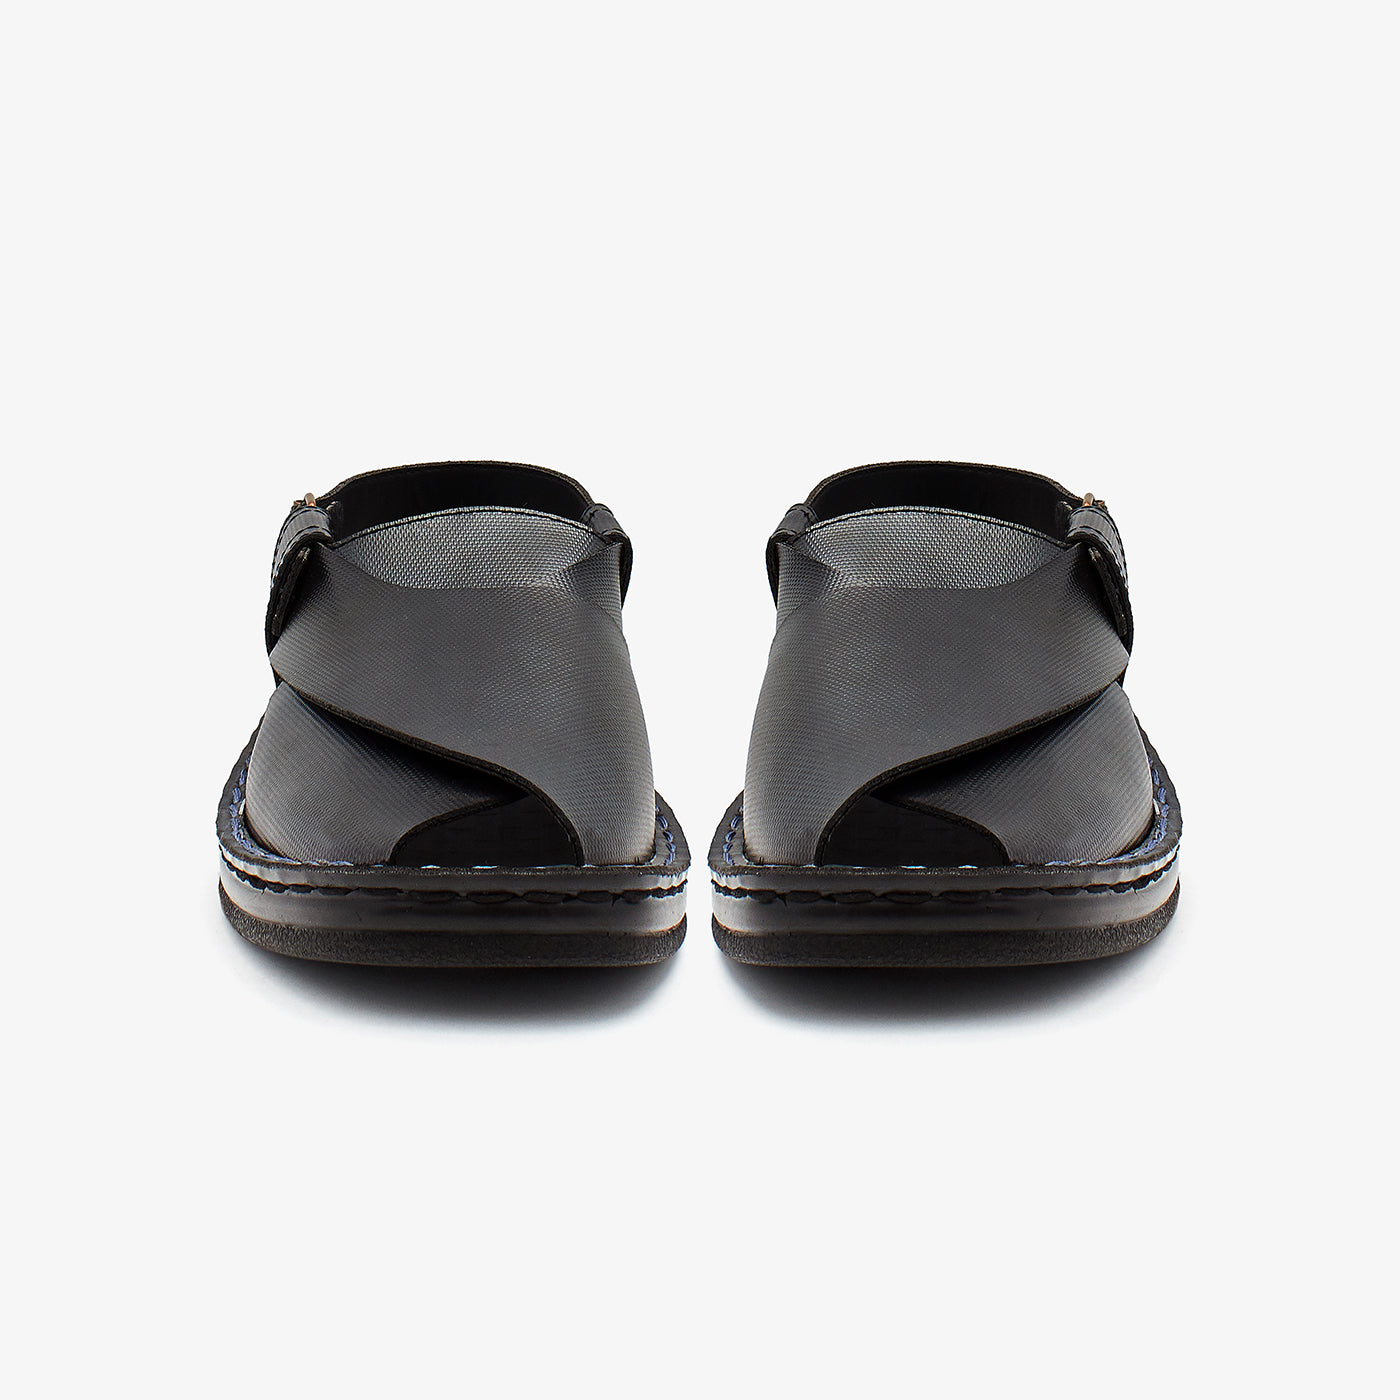 Comfort Mens Sandals